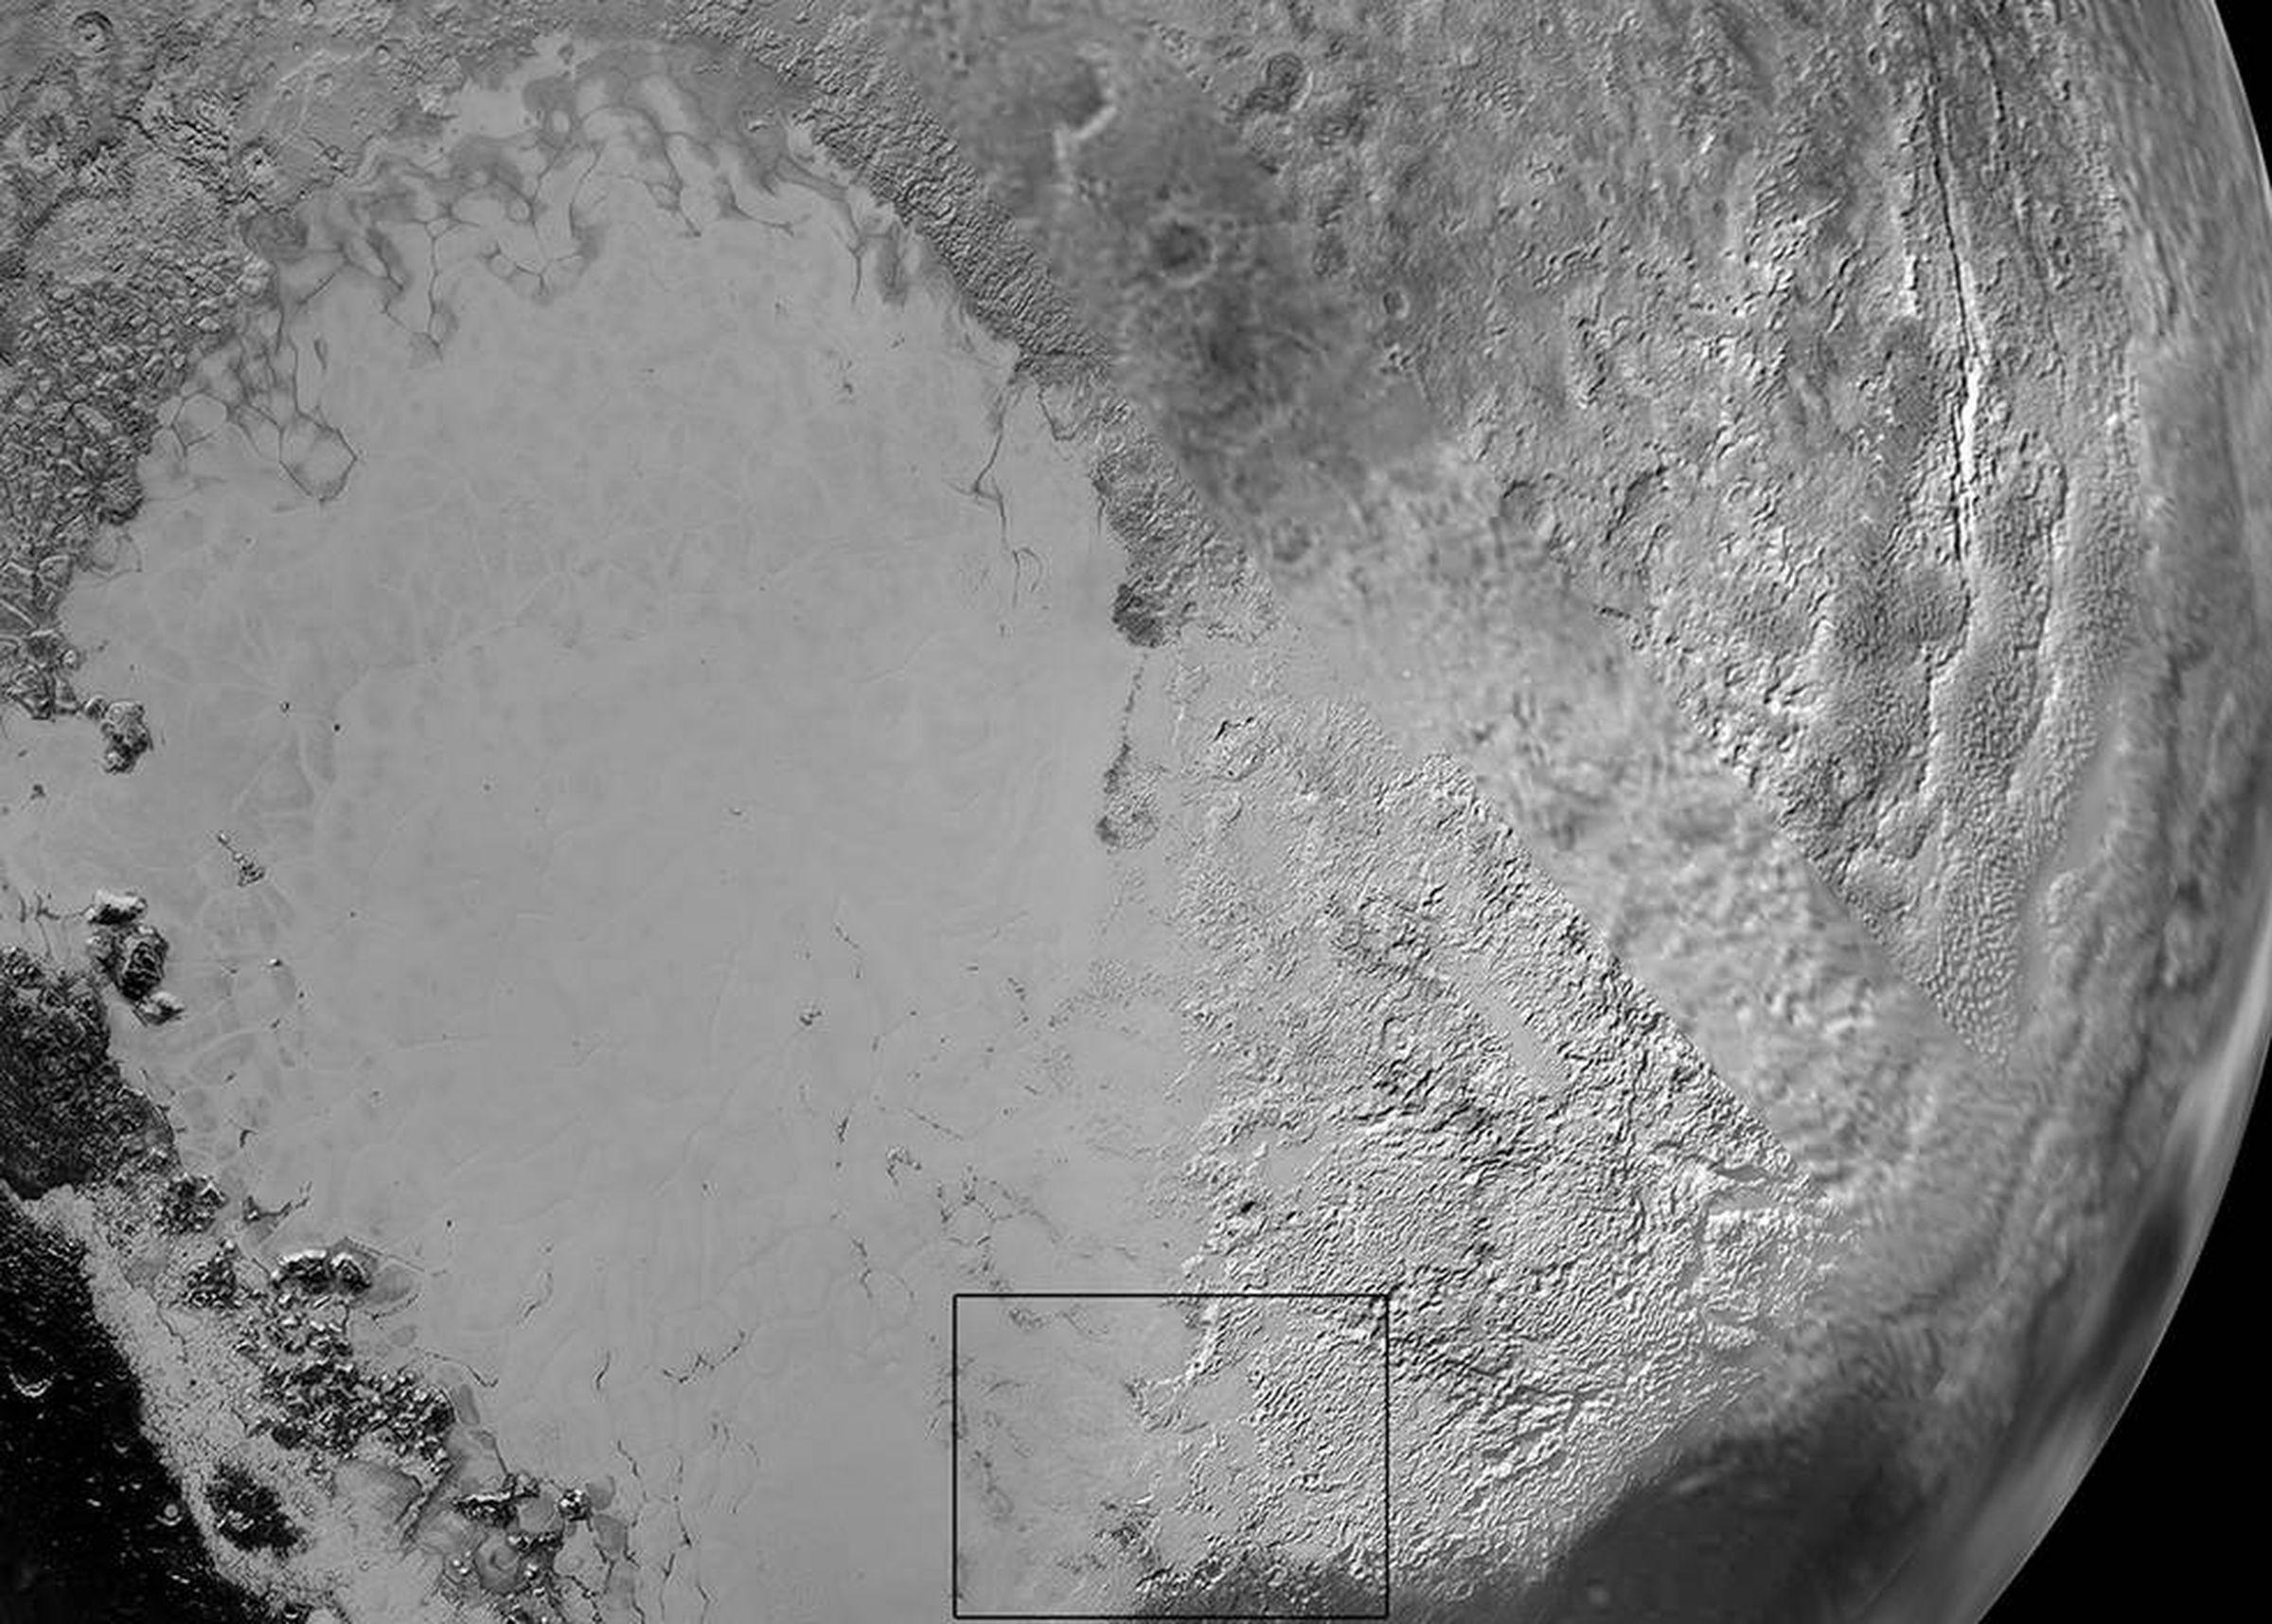 New panoramas of Pluto's surface